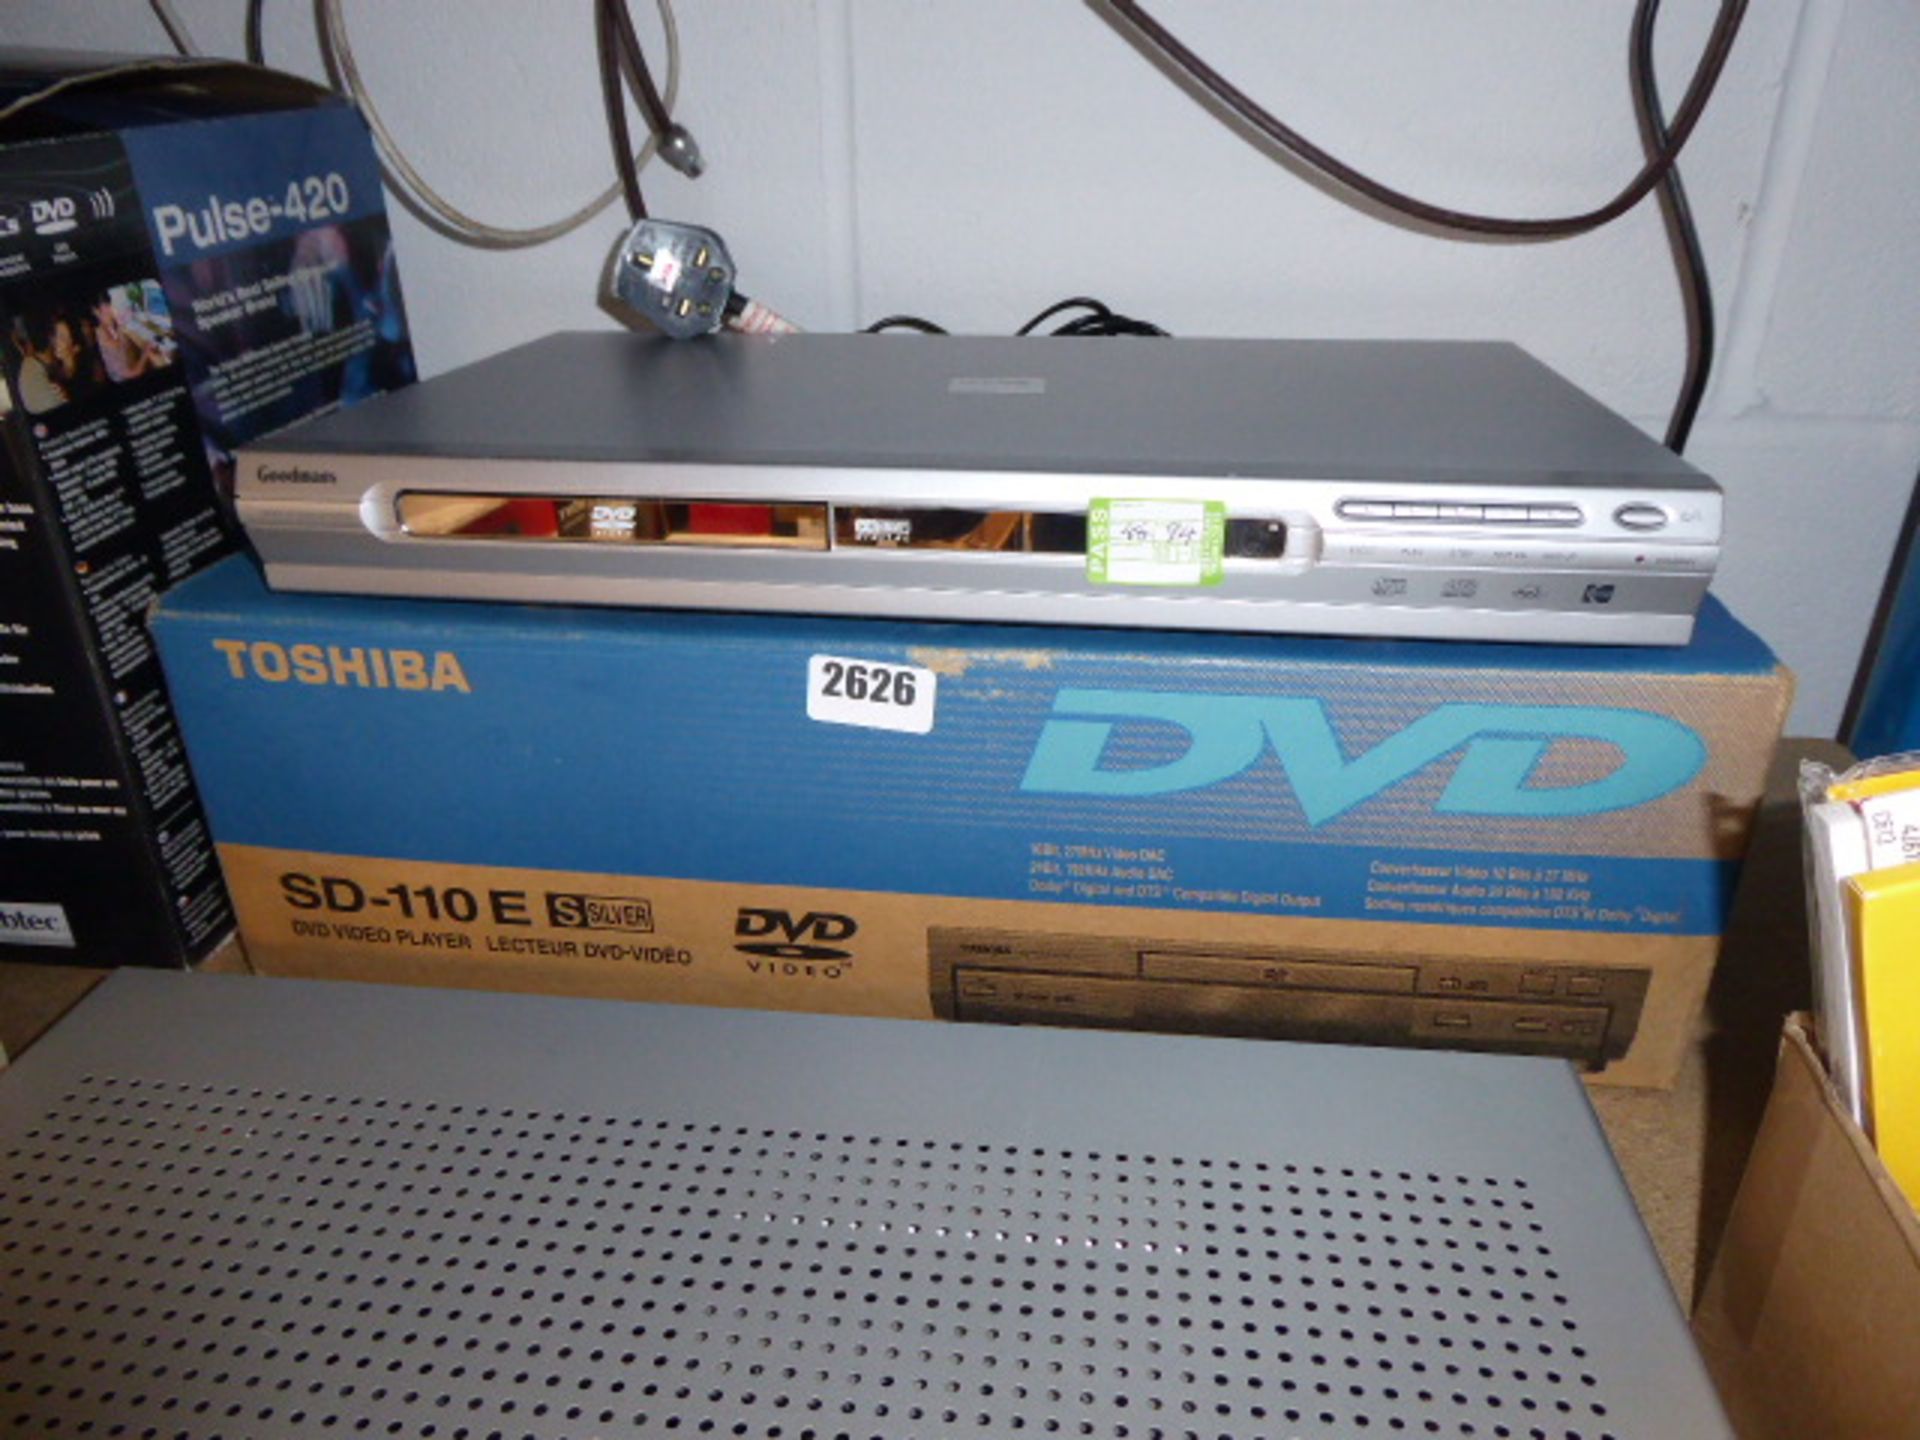 Toshiba and Goodmans DVD players